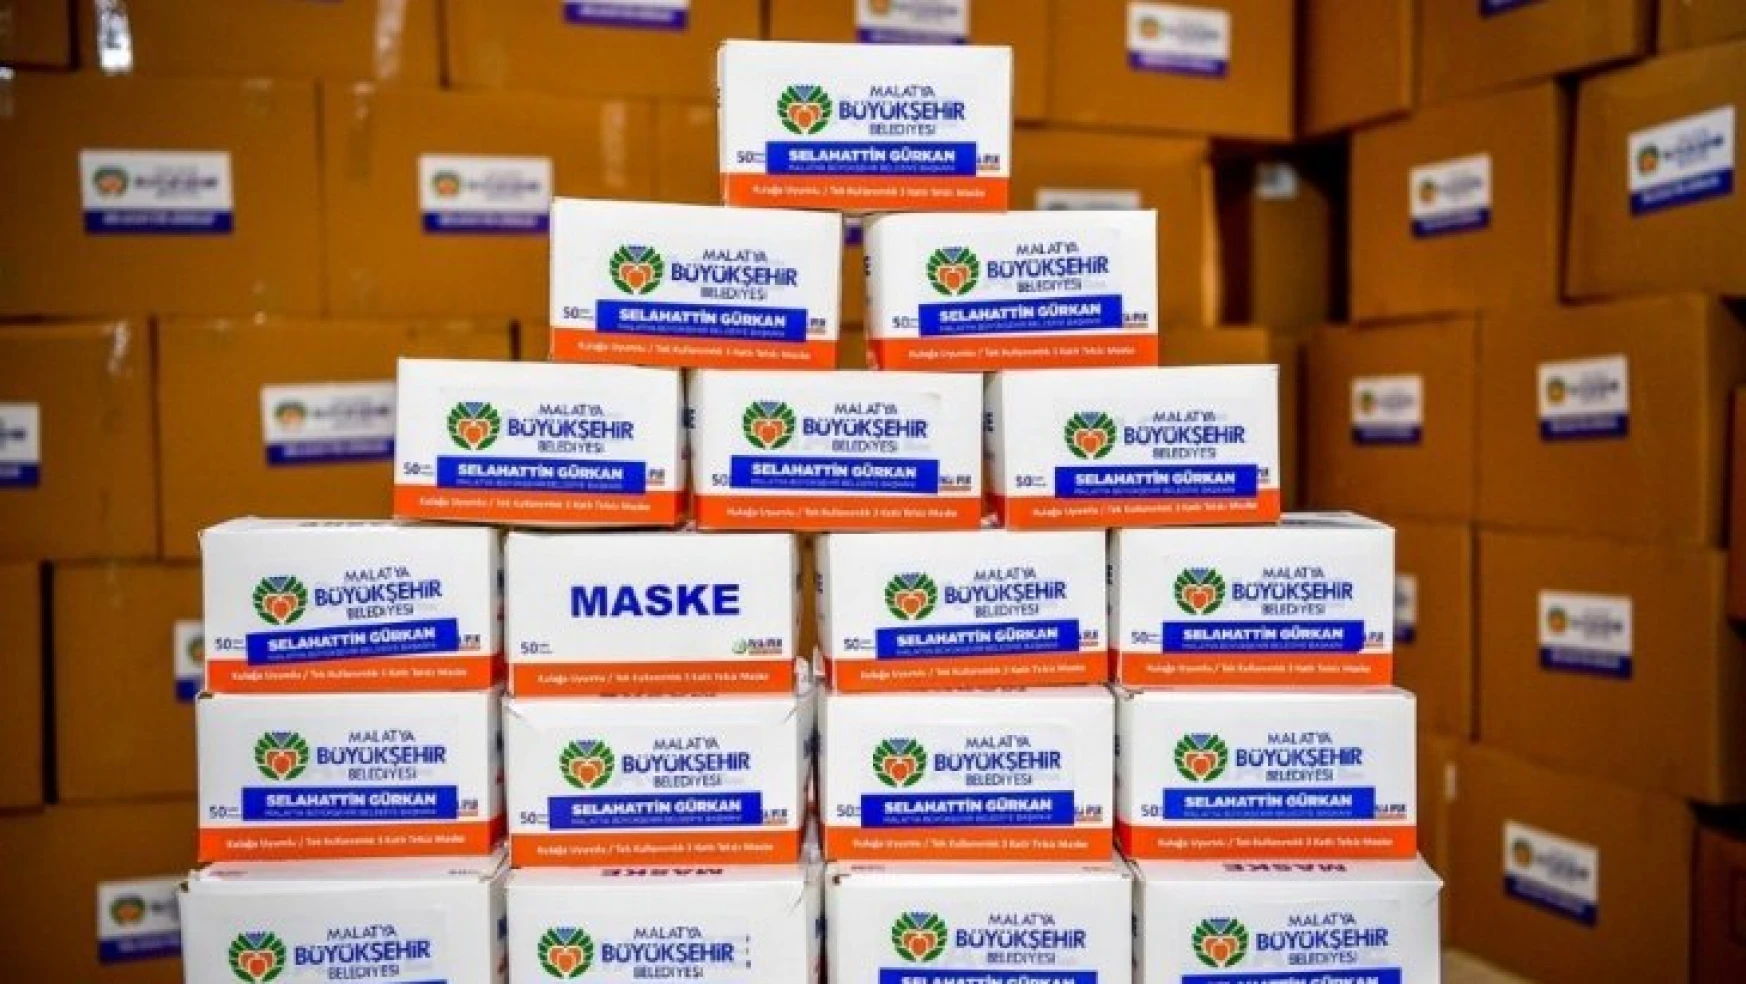 Malatya'dan 3 belediyeye 130 bin maske gönderildi